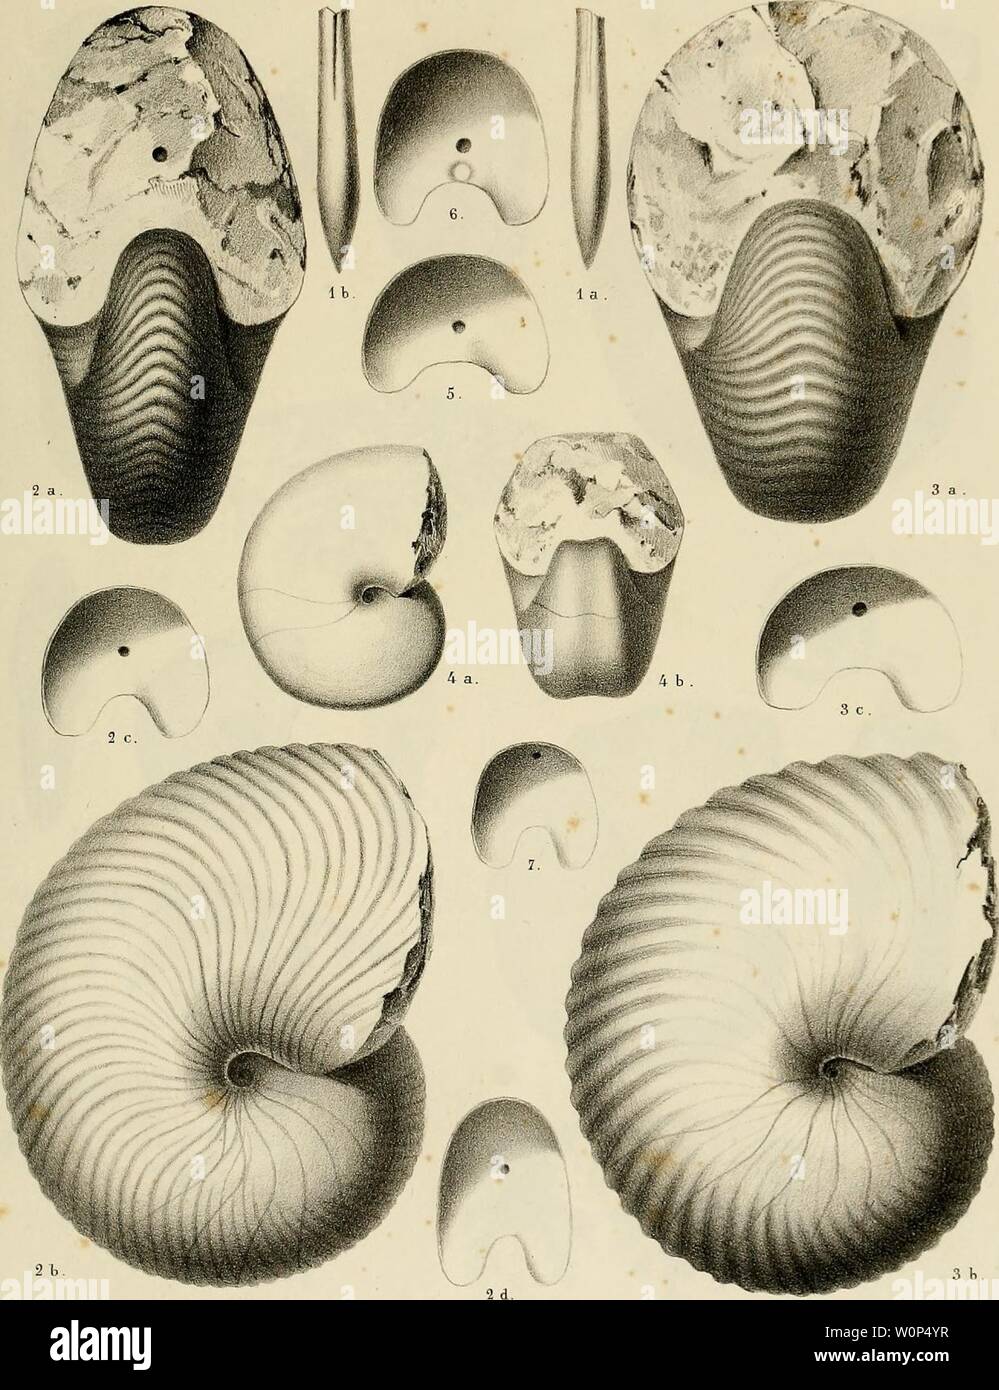 Archiv Bild von Seite 10 der Beschreibung des Mollusques Fossilien qui. Beschreibung des Mollusques Fossilien qui se trouvent dans les grès Verts des Umgebung de Genève descriptiondesmo 01 pict Jahr: 1847-1853 PI. 1. JÎCLÔler ad-nai.dtL U luJ,. Xah SchmidÀ Gtnift Fi.l, Belemniten minimus. Fi. 2, Nautilus Neckerianus. Abb. 3. N. Saussnreanus. Fi.4. N. lihodani. Fi. S bei der 7. Cloisons de Nautiles. Stockfoto